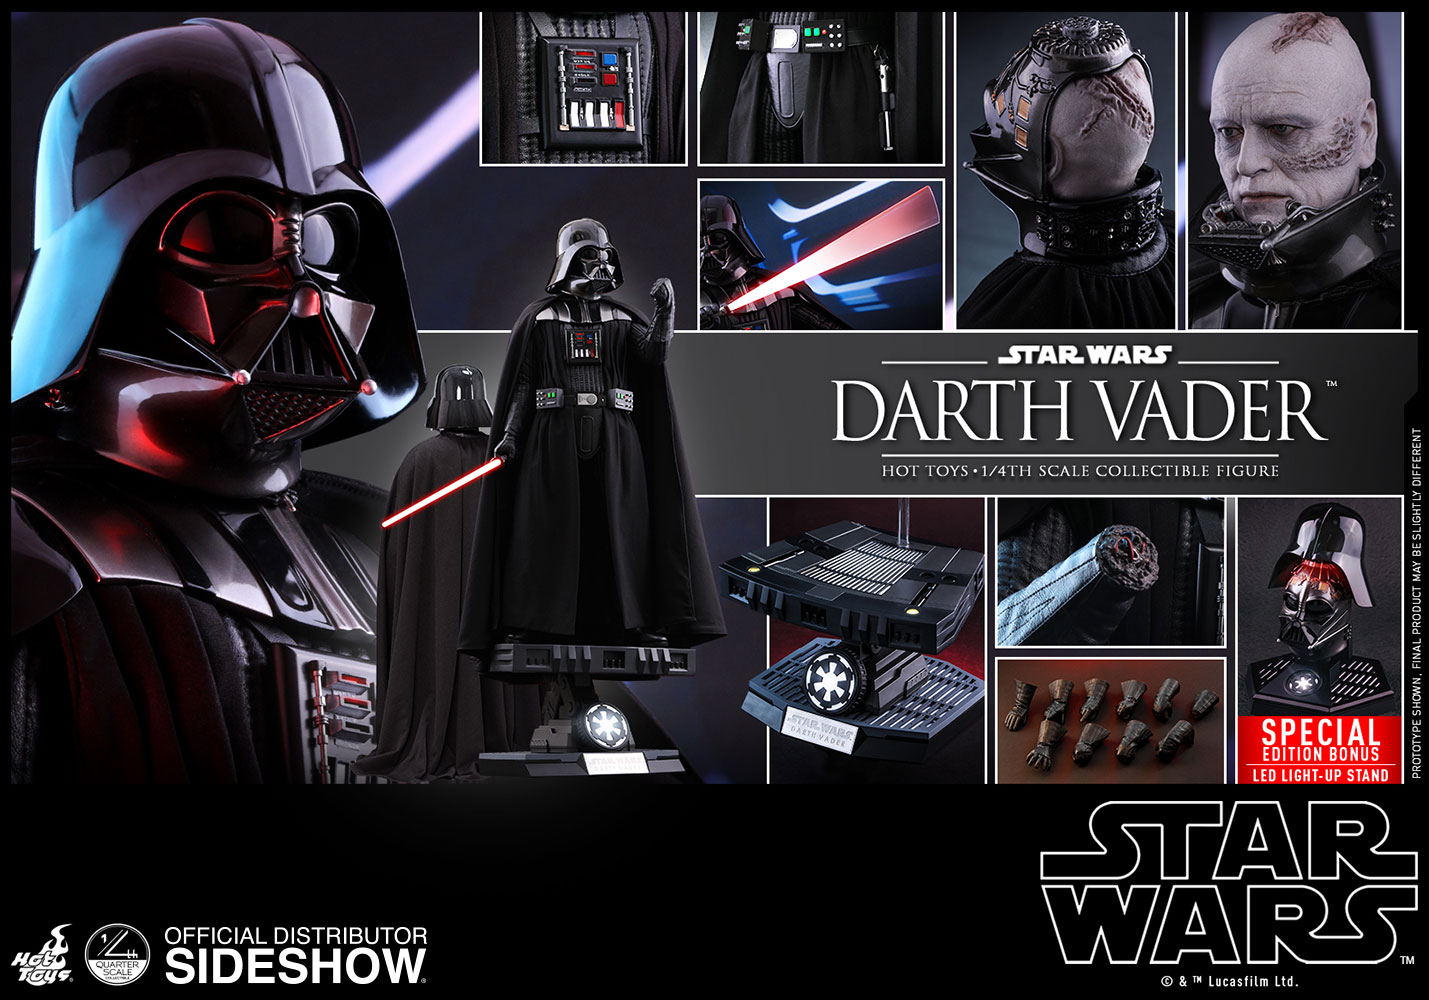 Darth Vader Special Edition Exclusive Edition - Prototype Shown